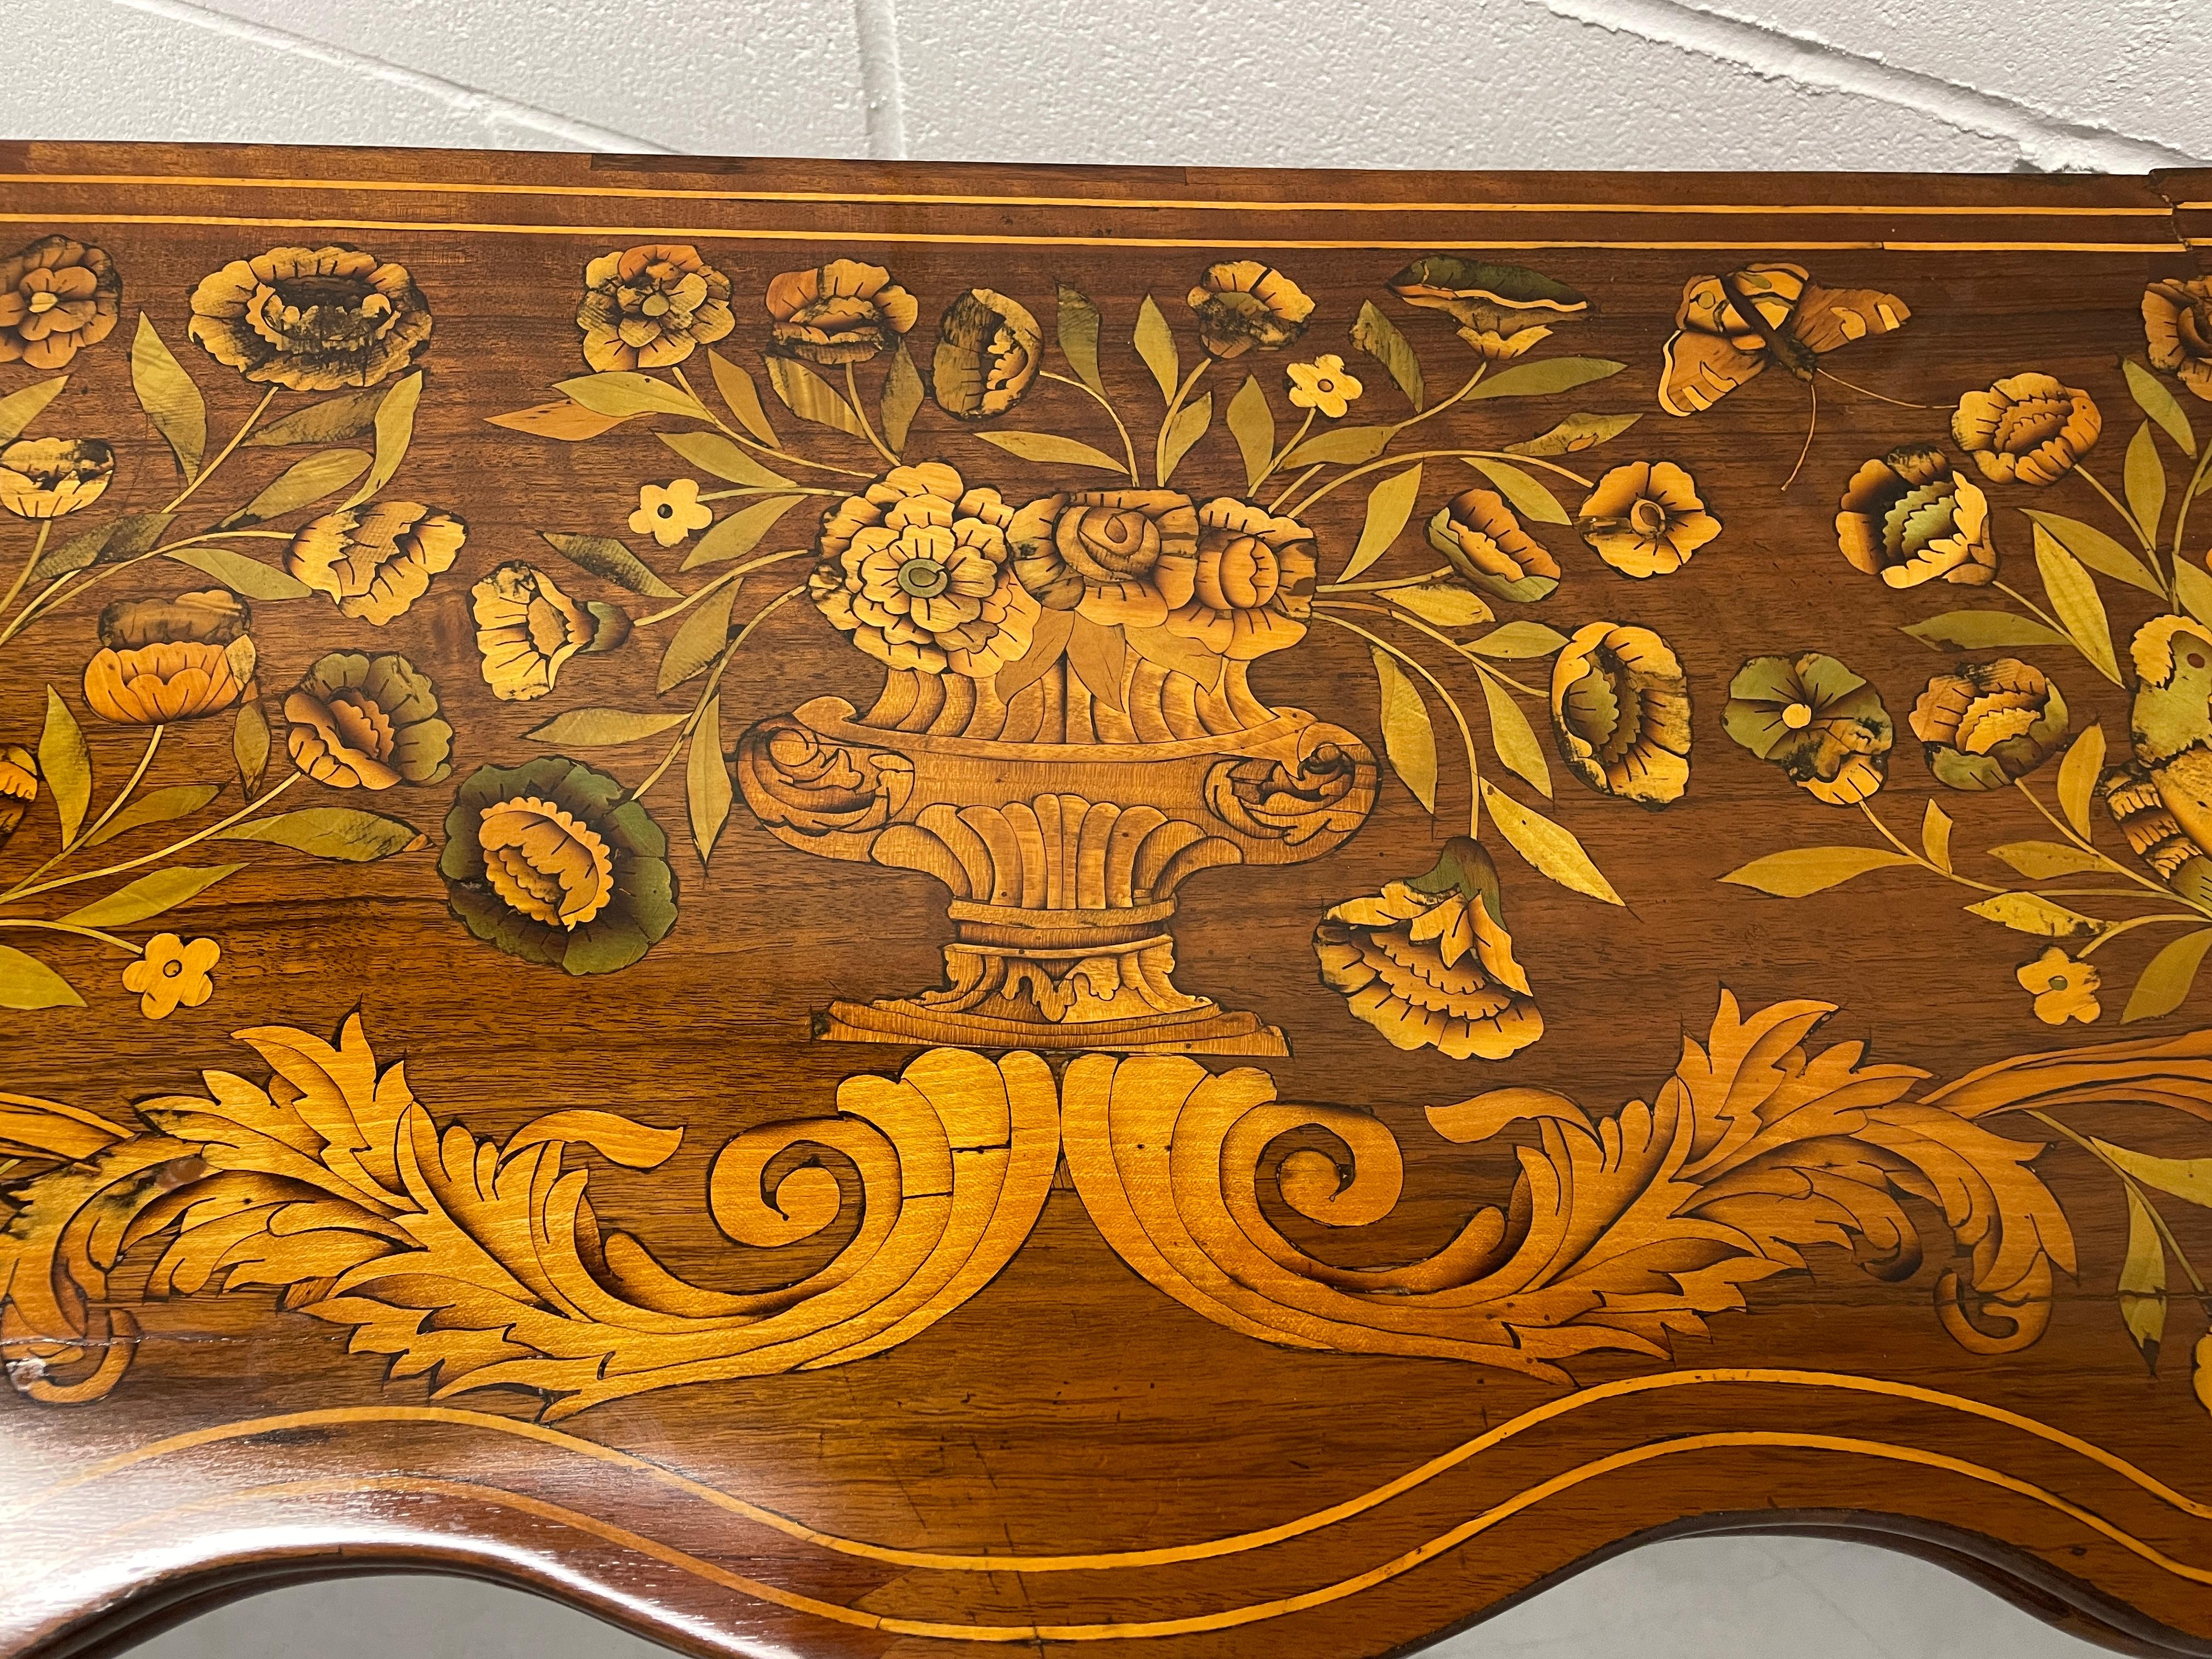 Dieser einzigartige Kartentisch stammt aus der zweiten Hälfte des 18. Jahrhunderts und kommt aus den Niederlanden. Der Kartentisch hat eine prächtige Intarsienarbeit auf der Platte. Blumen und Vögel schmücken dieses exquisite Stück. Sie können ihn